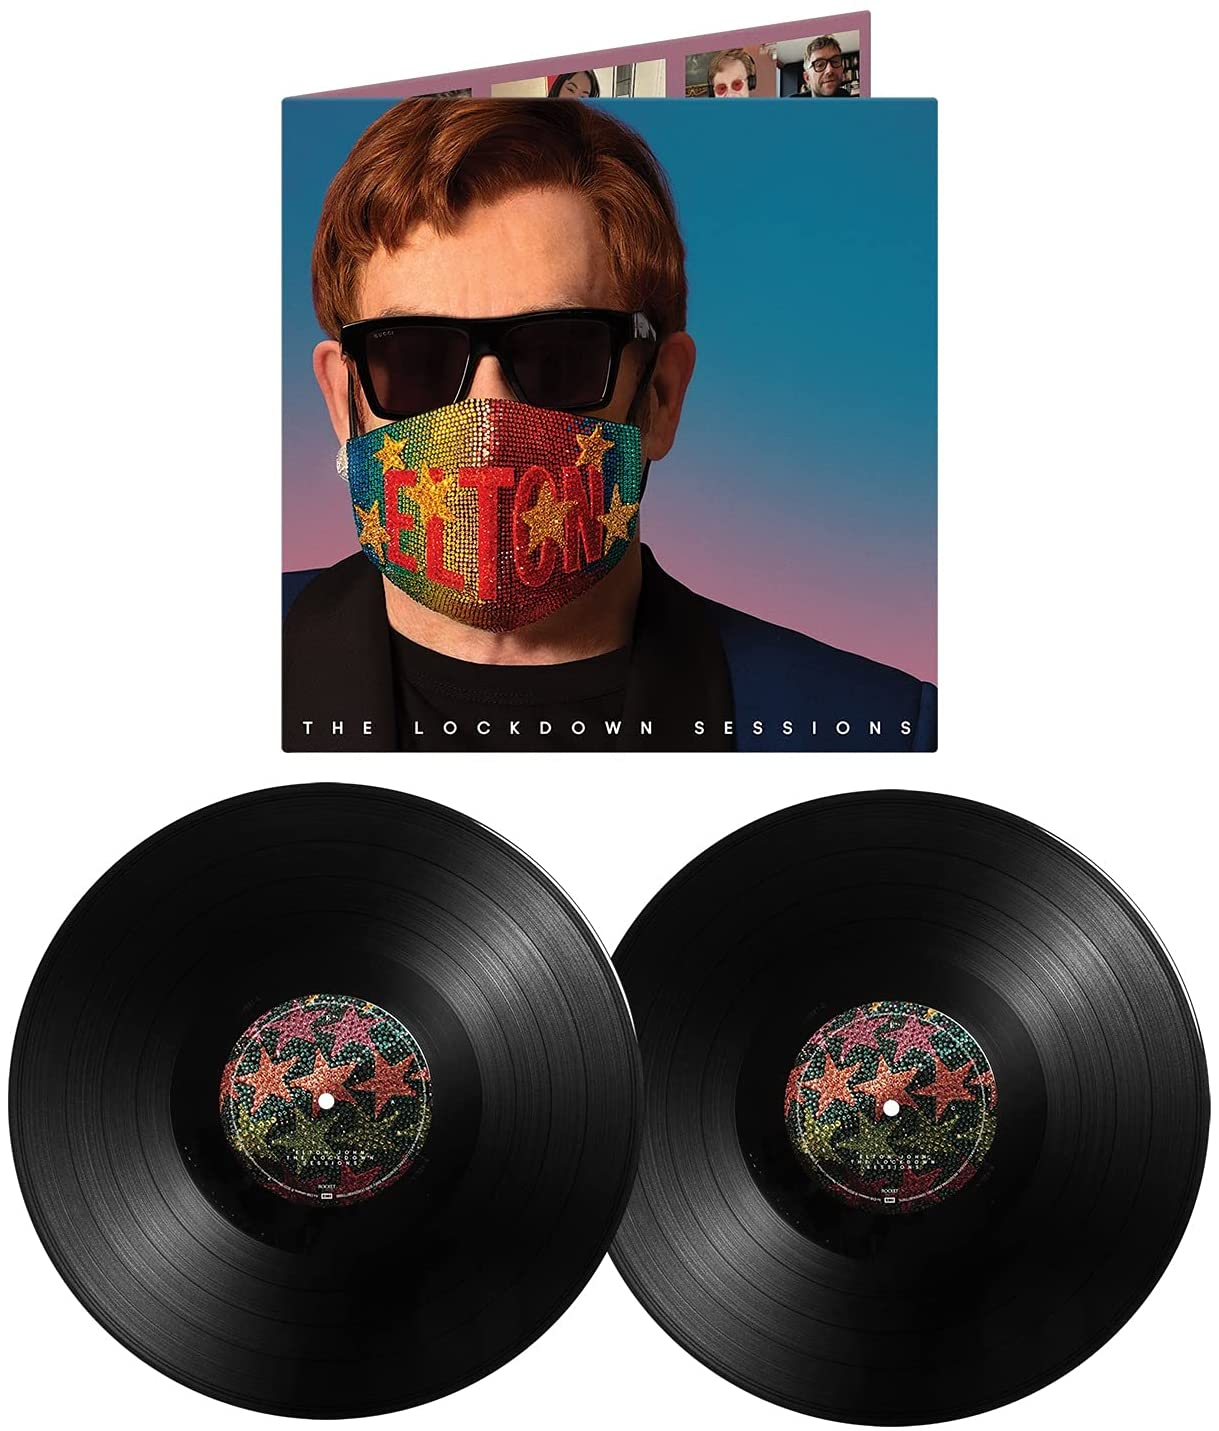 Elton John The Lockdown Sessions 2 x VINYL LP SET